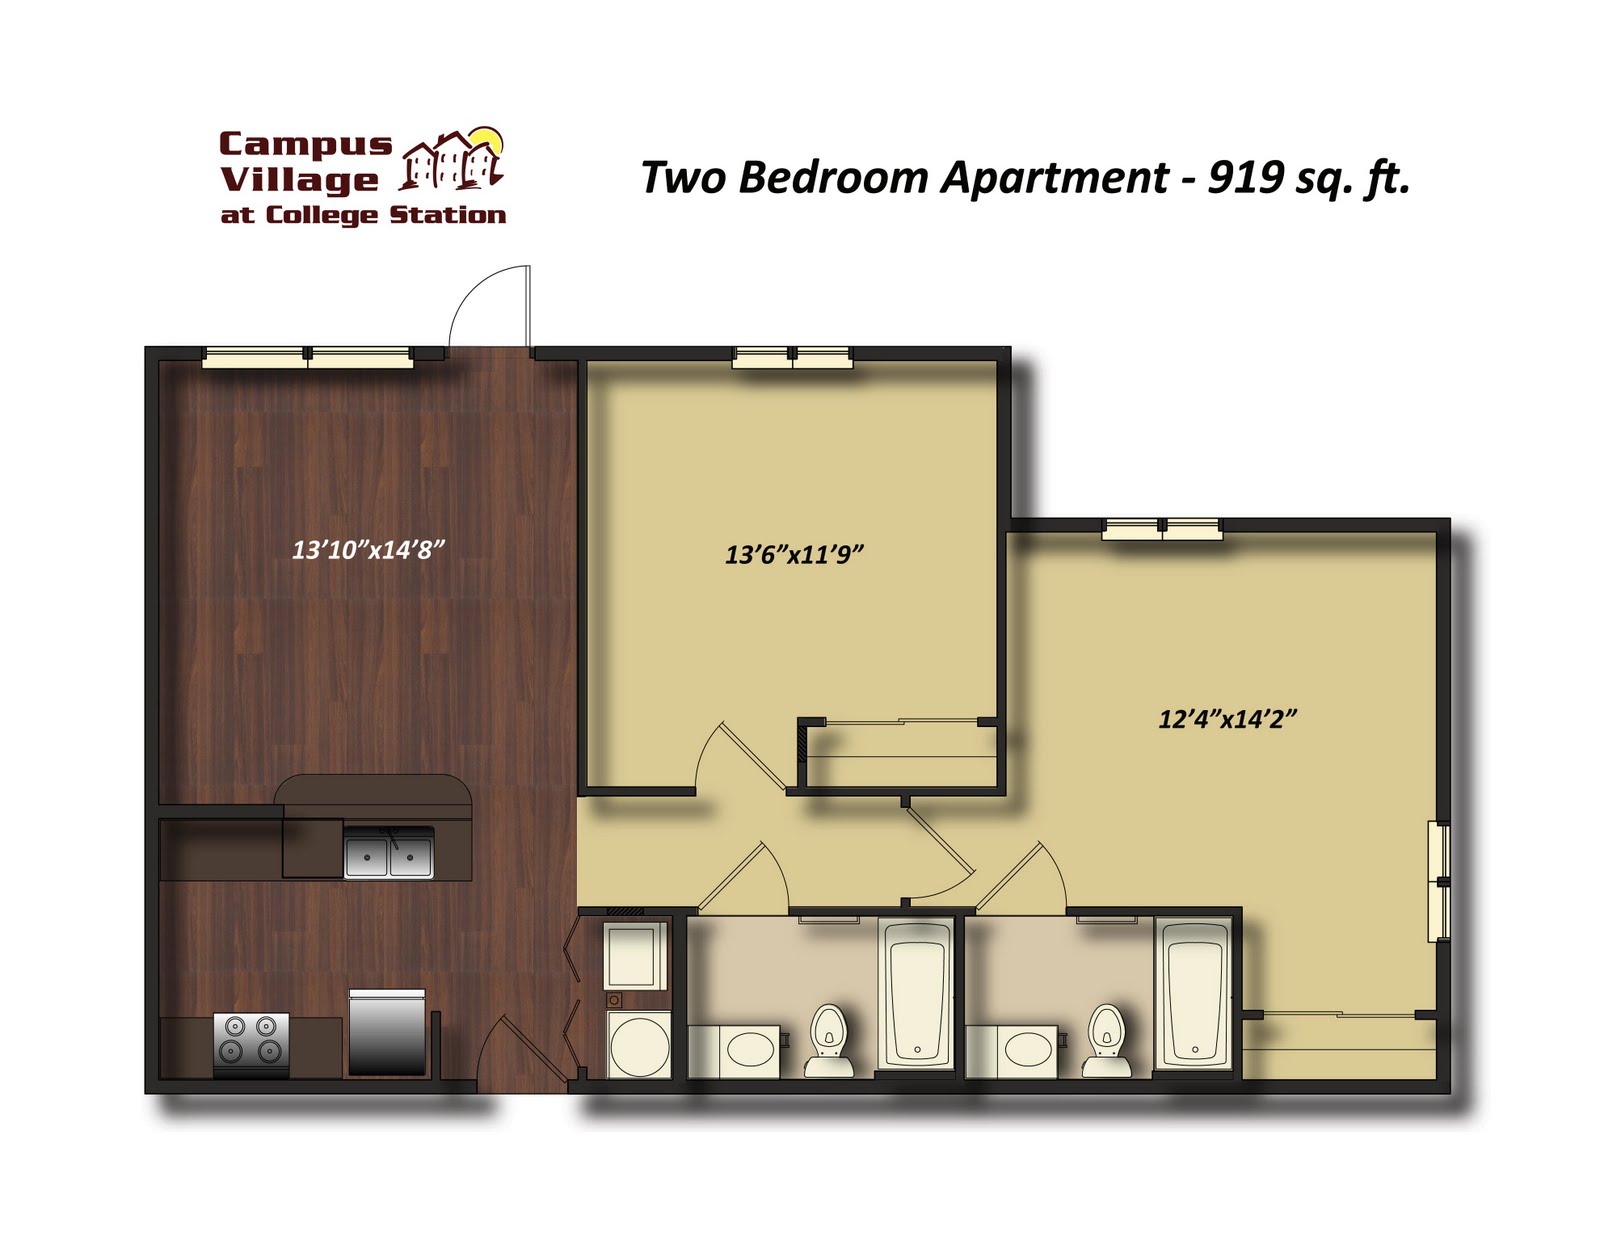 4 Bedroom Apartment Floor Plans